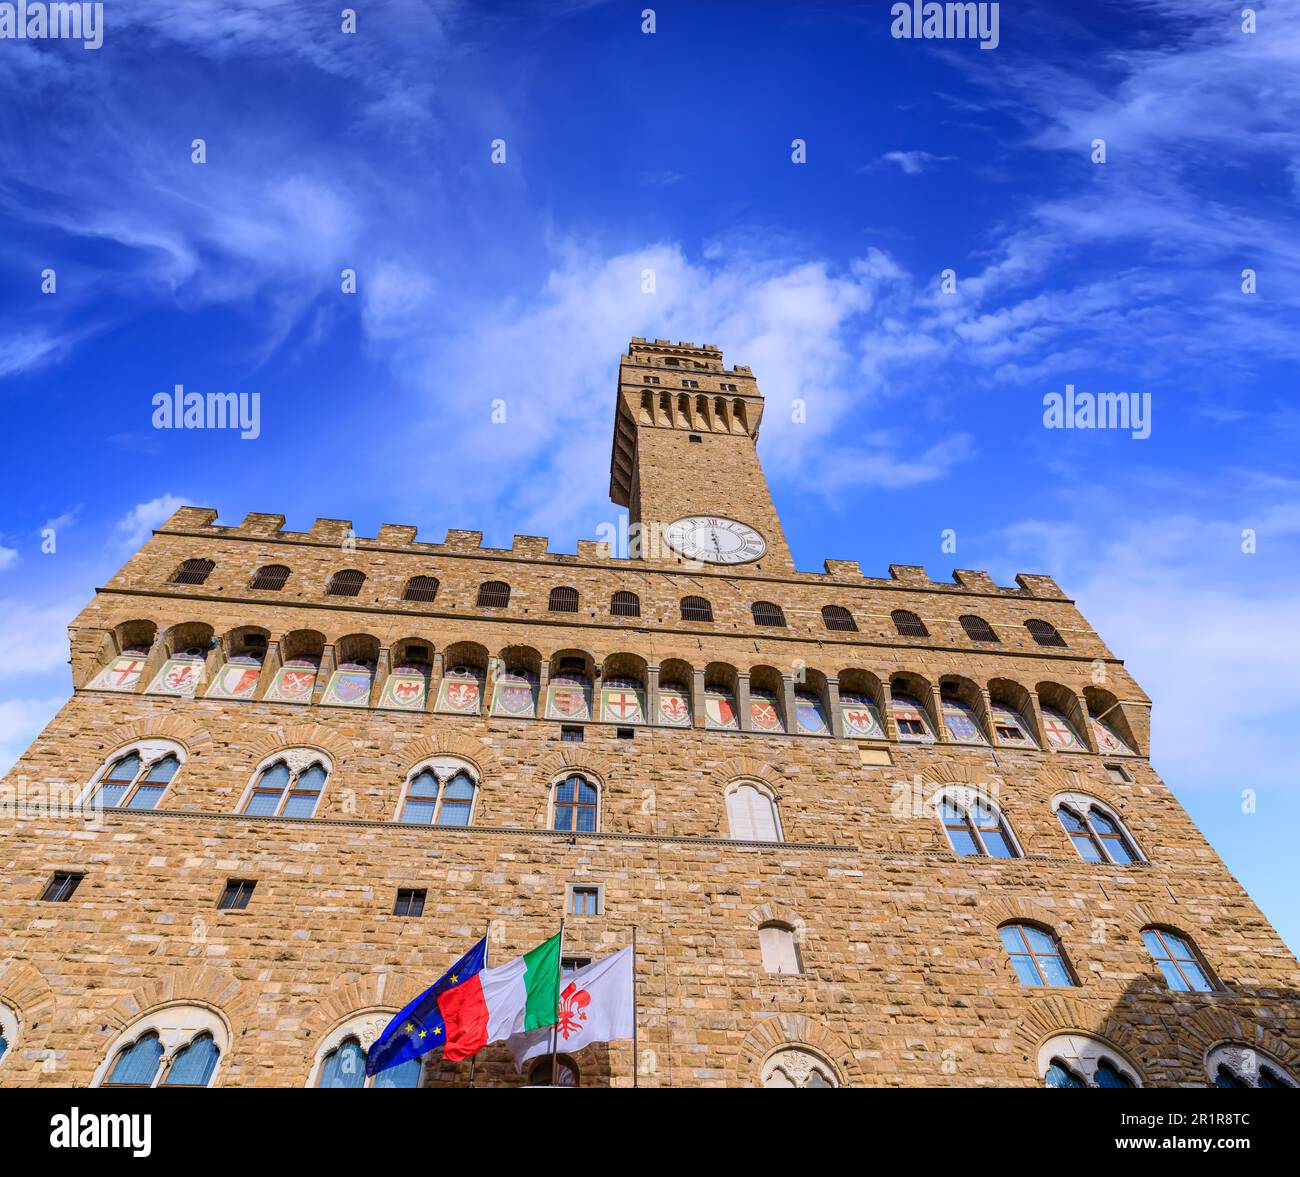 Vue urbaine du centre historique de Florence, Italie: Le Palazzo Vecchio avec la Tour d'Arnolfo depuis la Piazza della Signoria. Banque D'Images